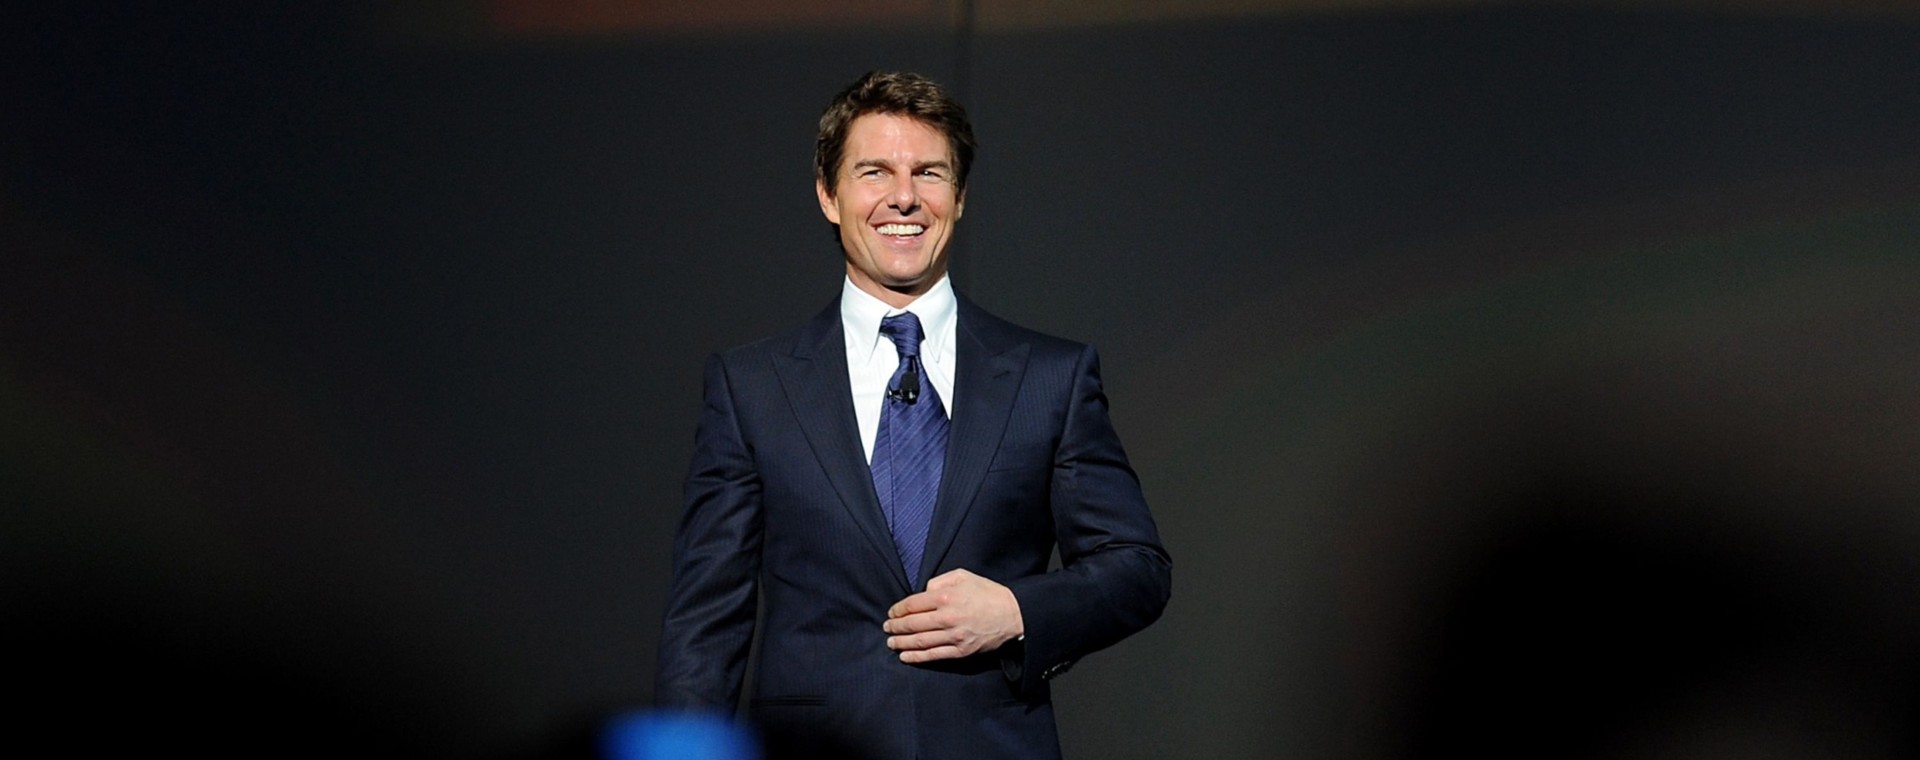 Tom Cruise berbicara tentang keberlanjutan pada pertemuan pemegang saham tahunan Wal-Mart Stores Inc. di Fayetteville, Arkansas, AS, Jumat, (7/6 - 2013). Bloomberg / Sarah Bentham